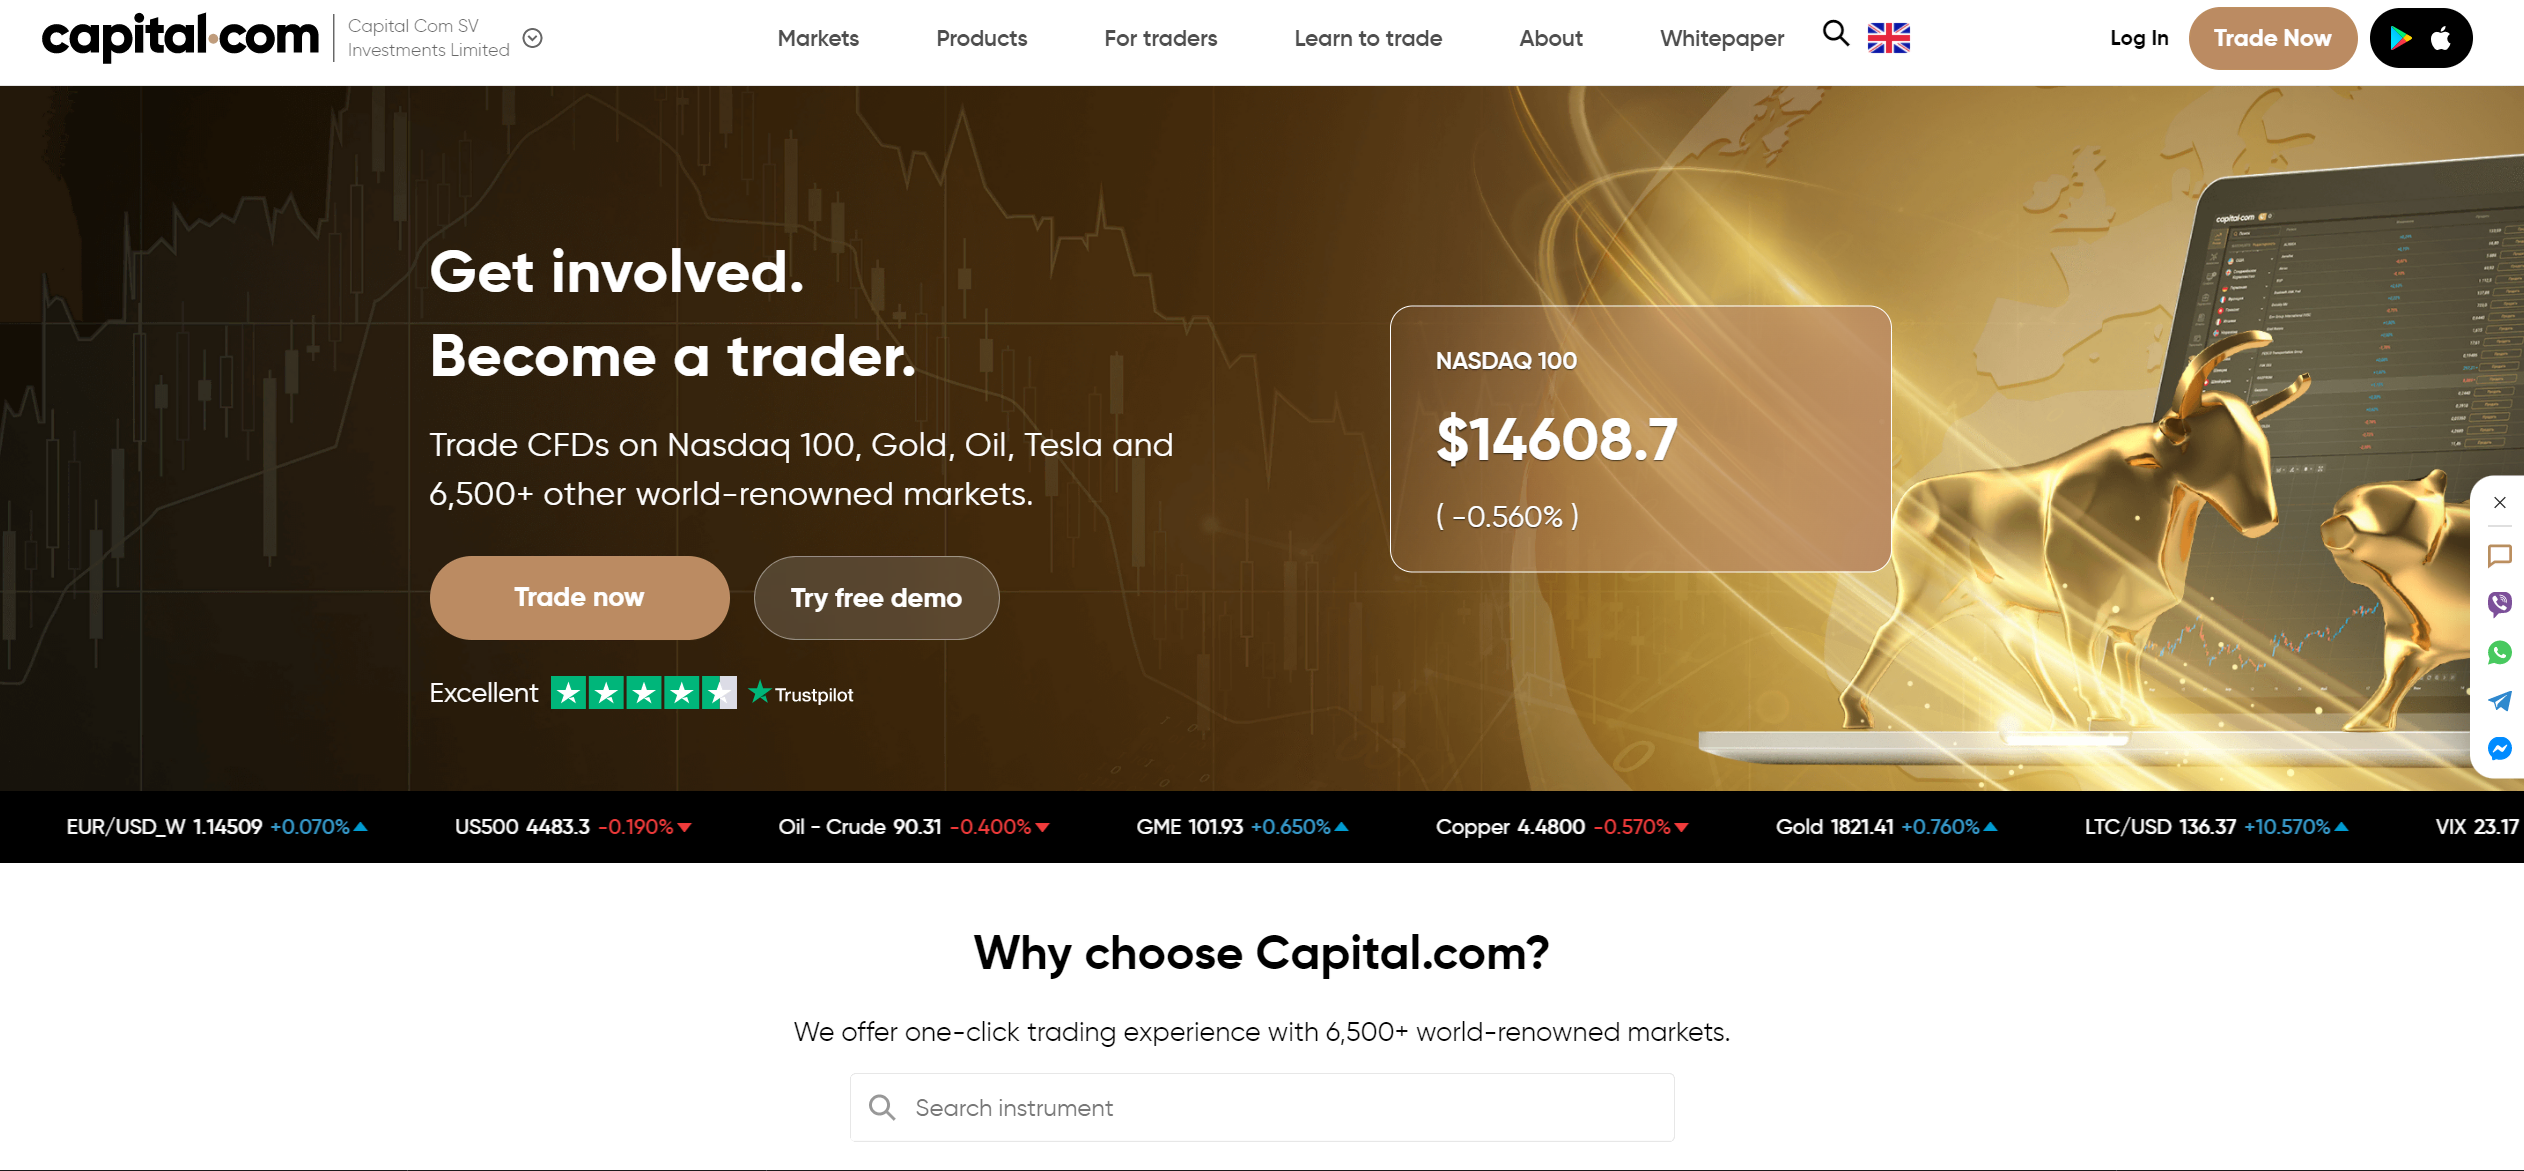 Trang web chính thức Capital.com